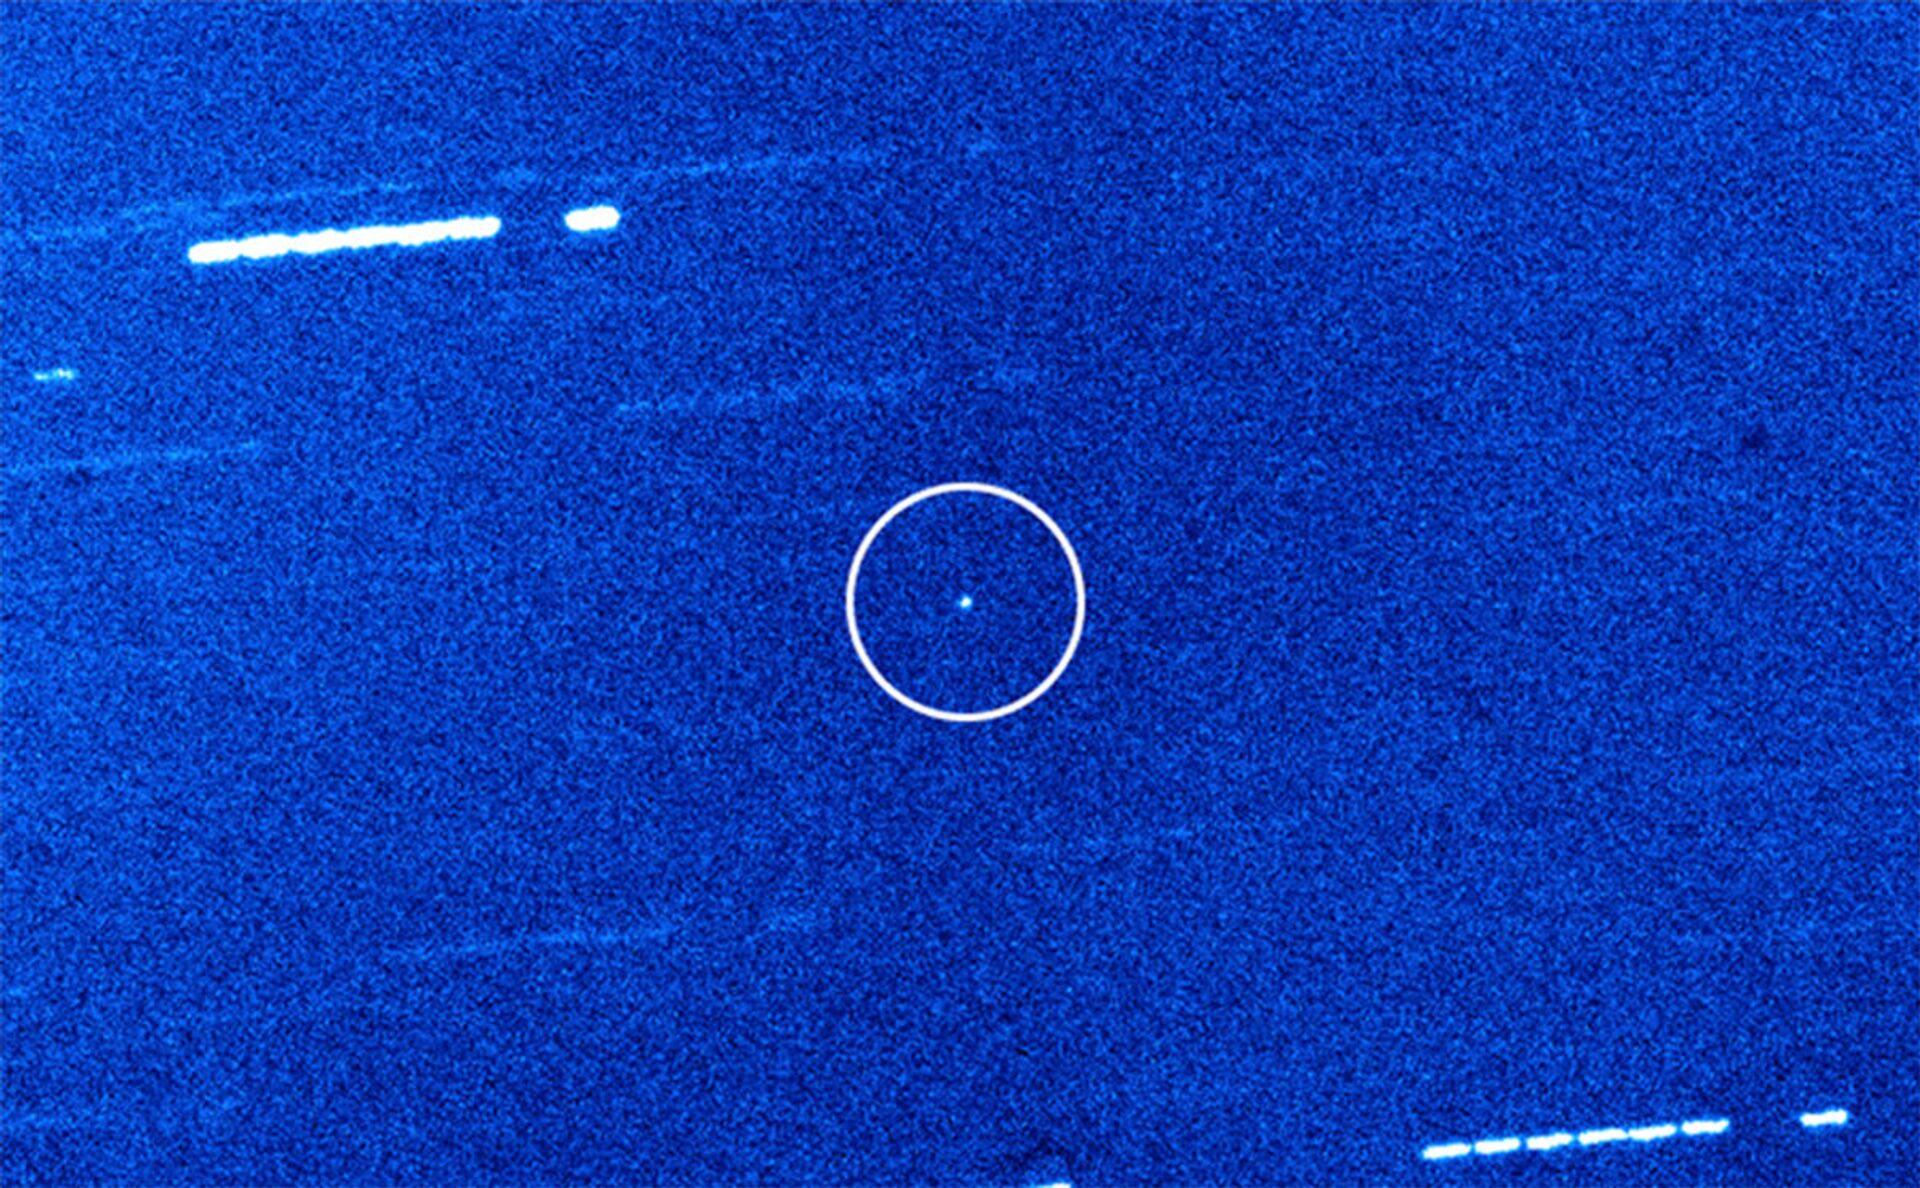 Cientistas revelam quantos objetos interestrelares visitam nosso Sistema Solar por ano - Sputnik Brasil, 1920, 15.03.2021